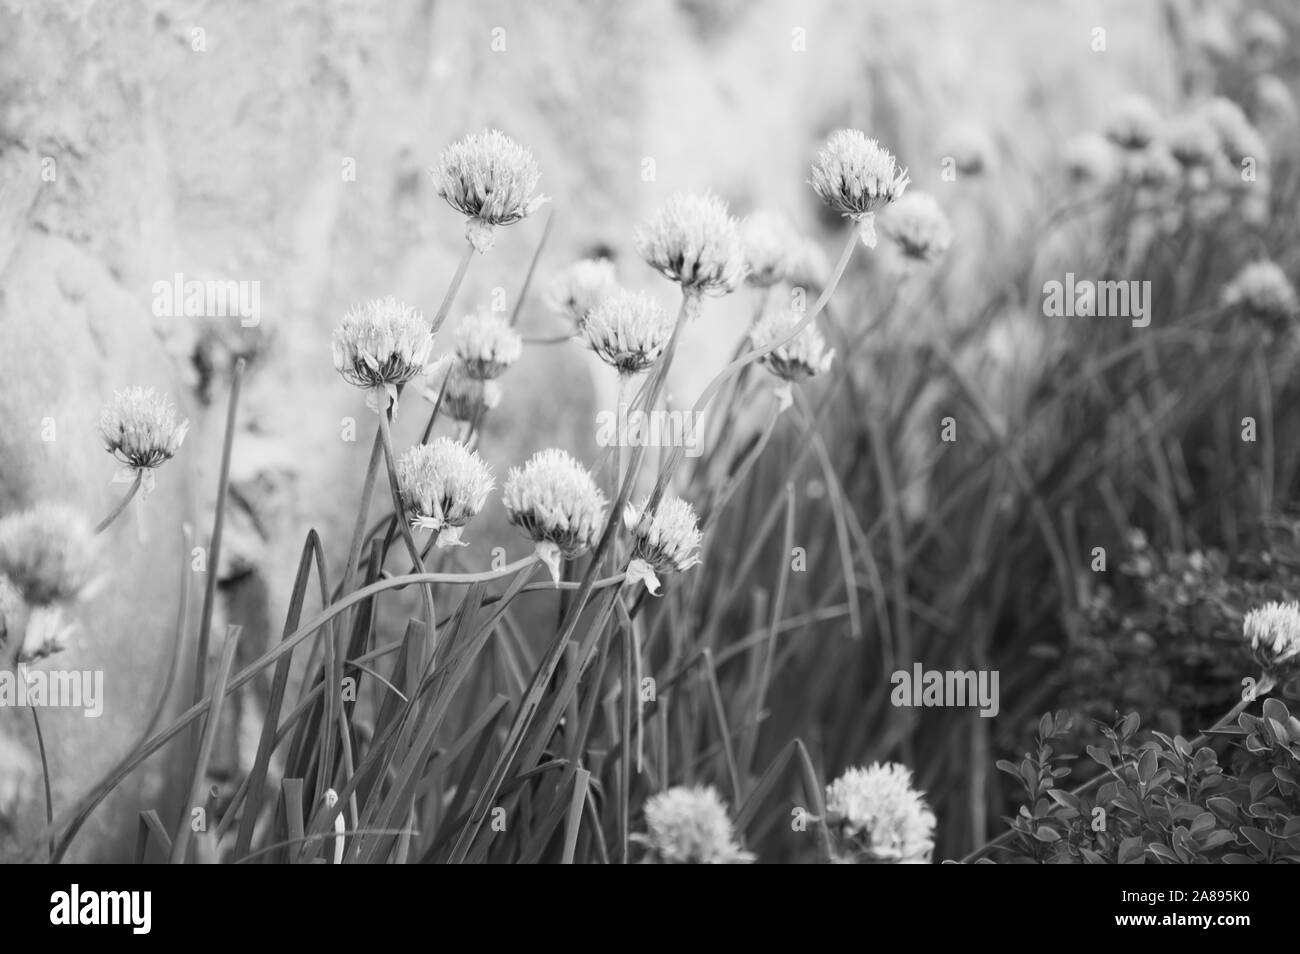 Allium Blumen in dekorativen Garten gepflanzt Neben alten Steinmauer. Soft Schwarz und Weiß Foto Stockfoto